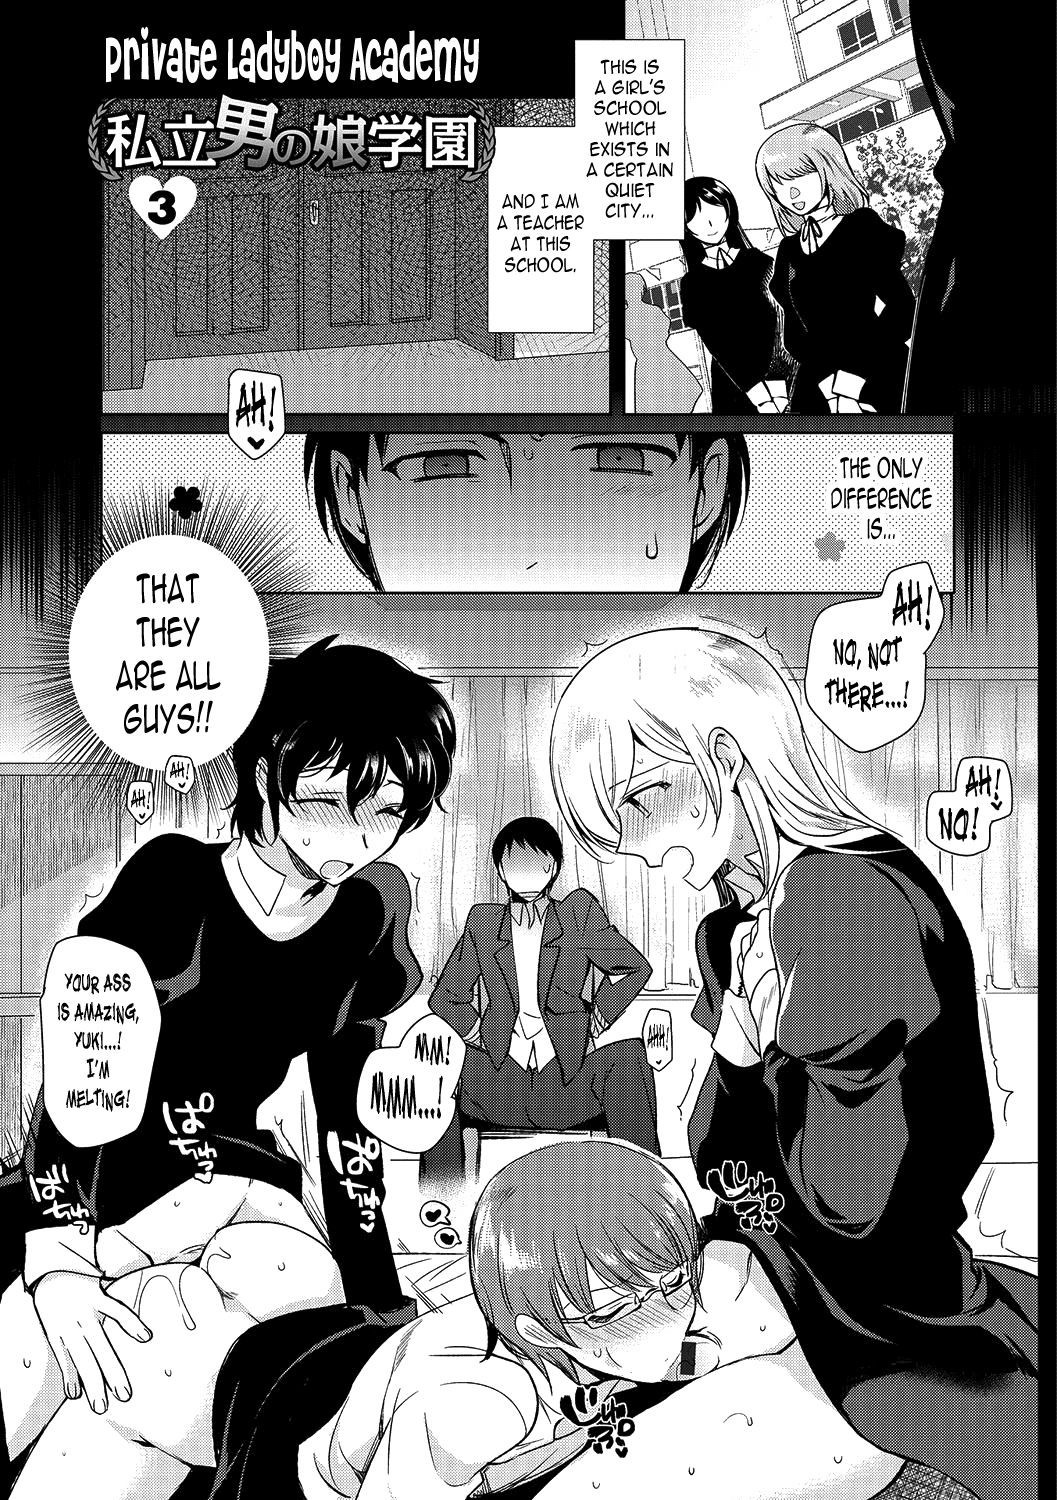 Shiritsu Otokonoko Gakuen | Private Ladyboy Academy Chapter 3 - Page 1 -  9hentai - Hentai Manga, Read Hentai, Doujin Manga